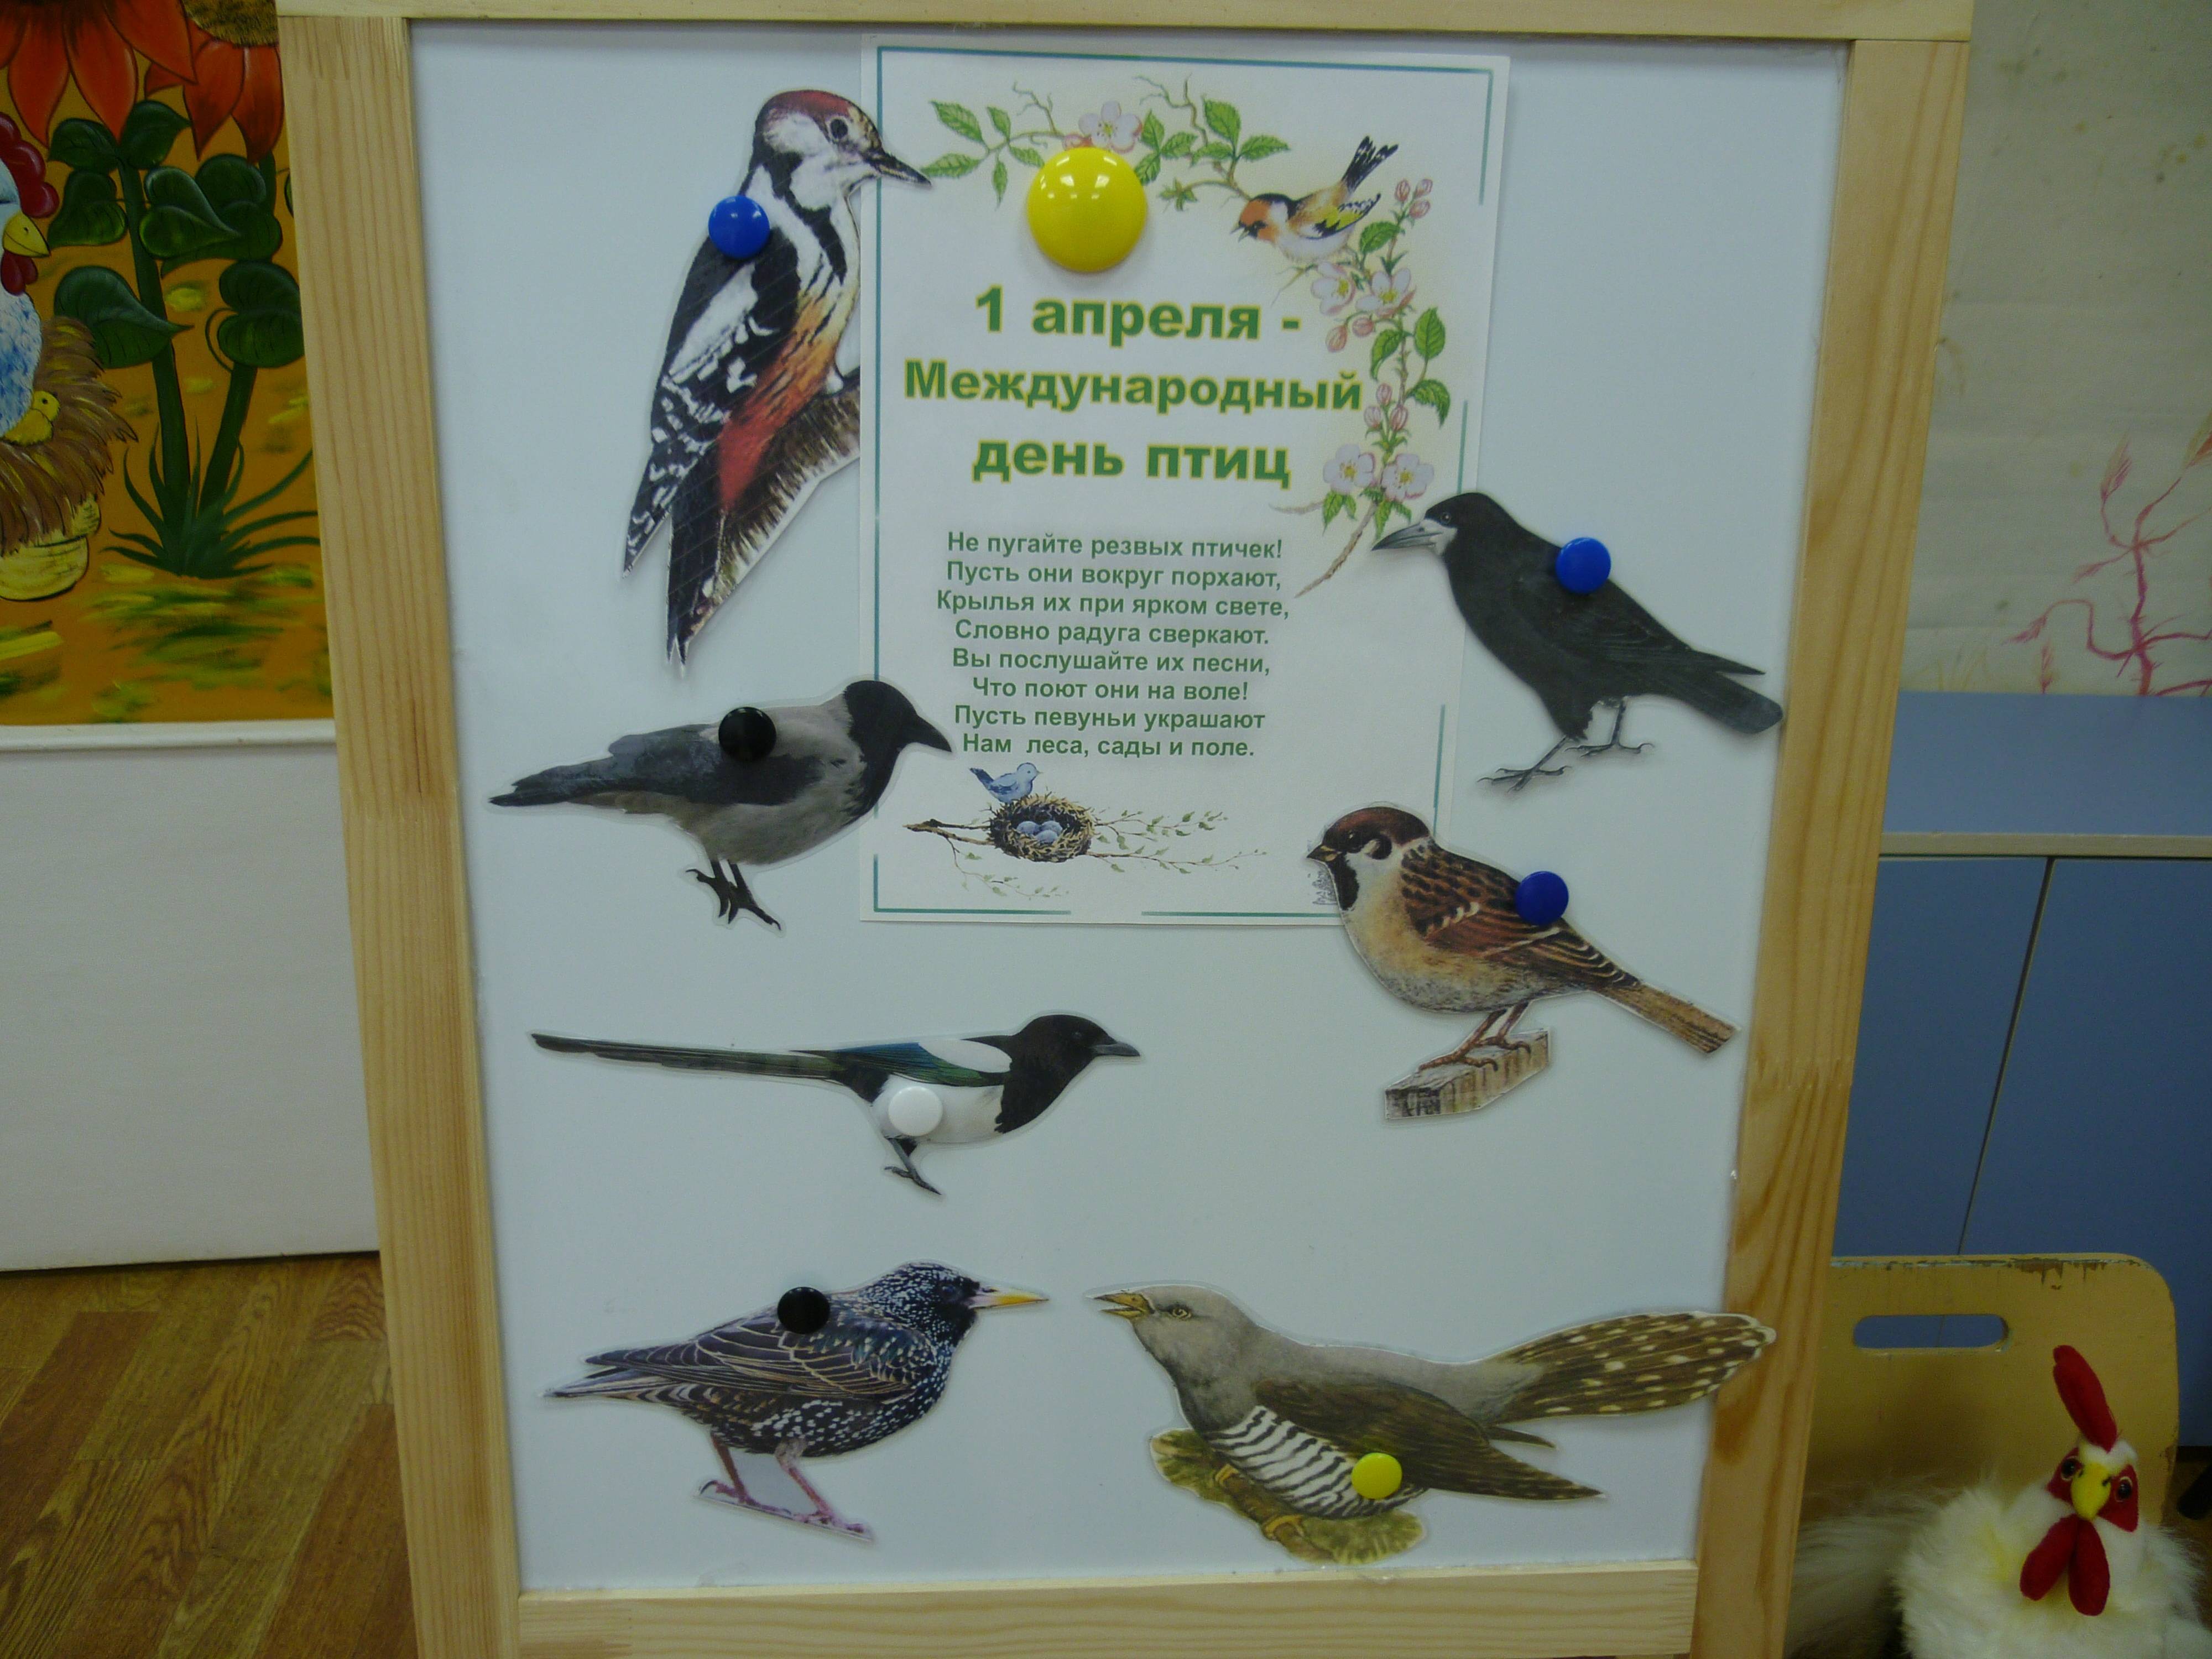 1 апреля – это еще и День птиц История праздника